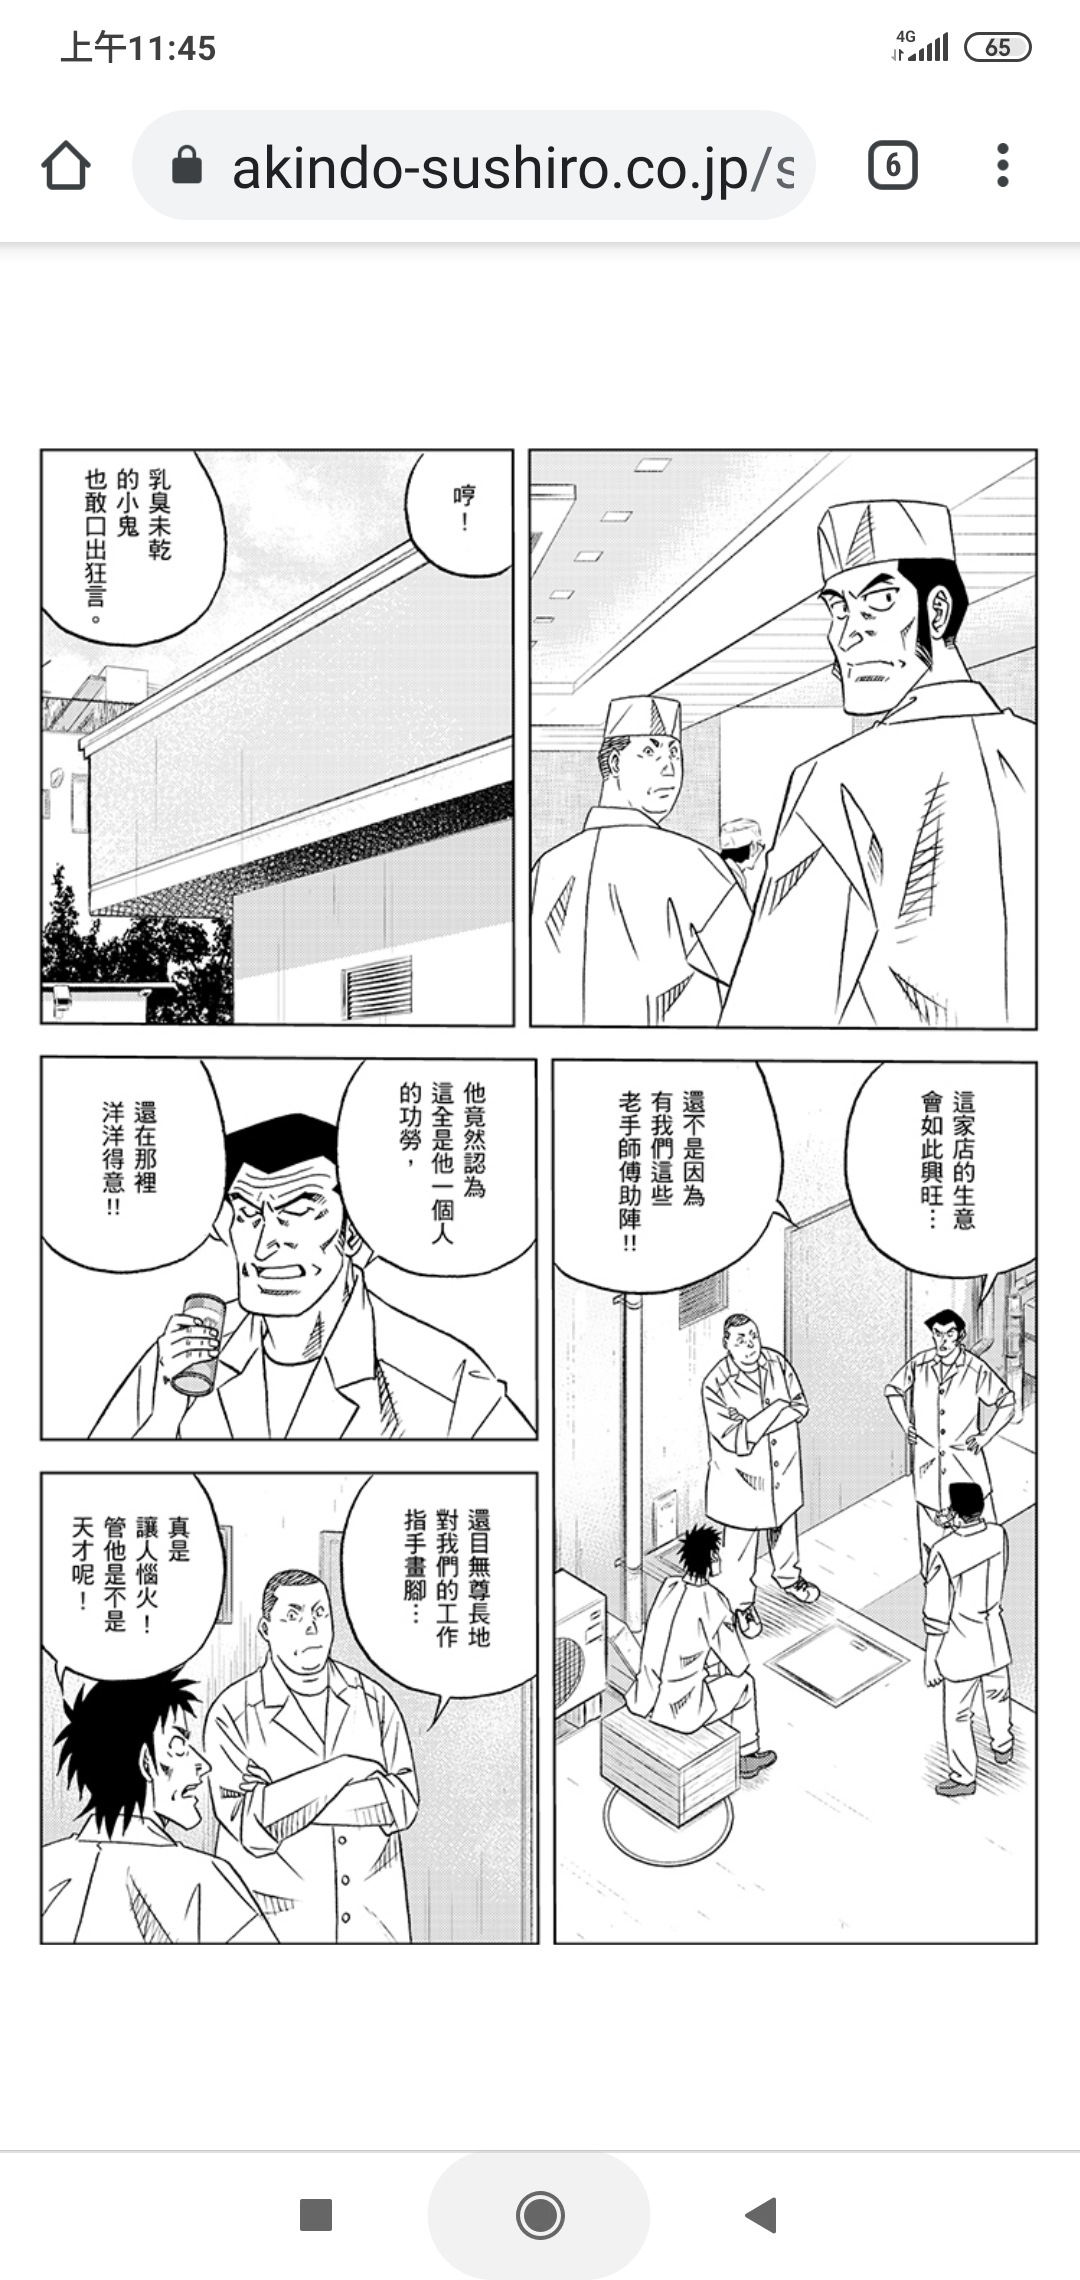 將太末日 壽司郎用漫畫宣傳機器壽司 侮辱傳統日本料理 Lihkg 討論區